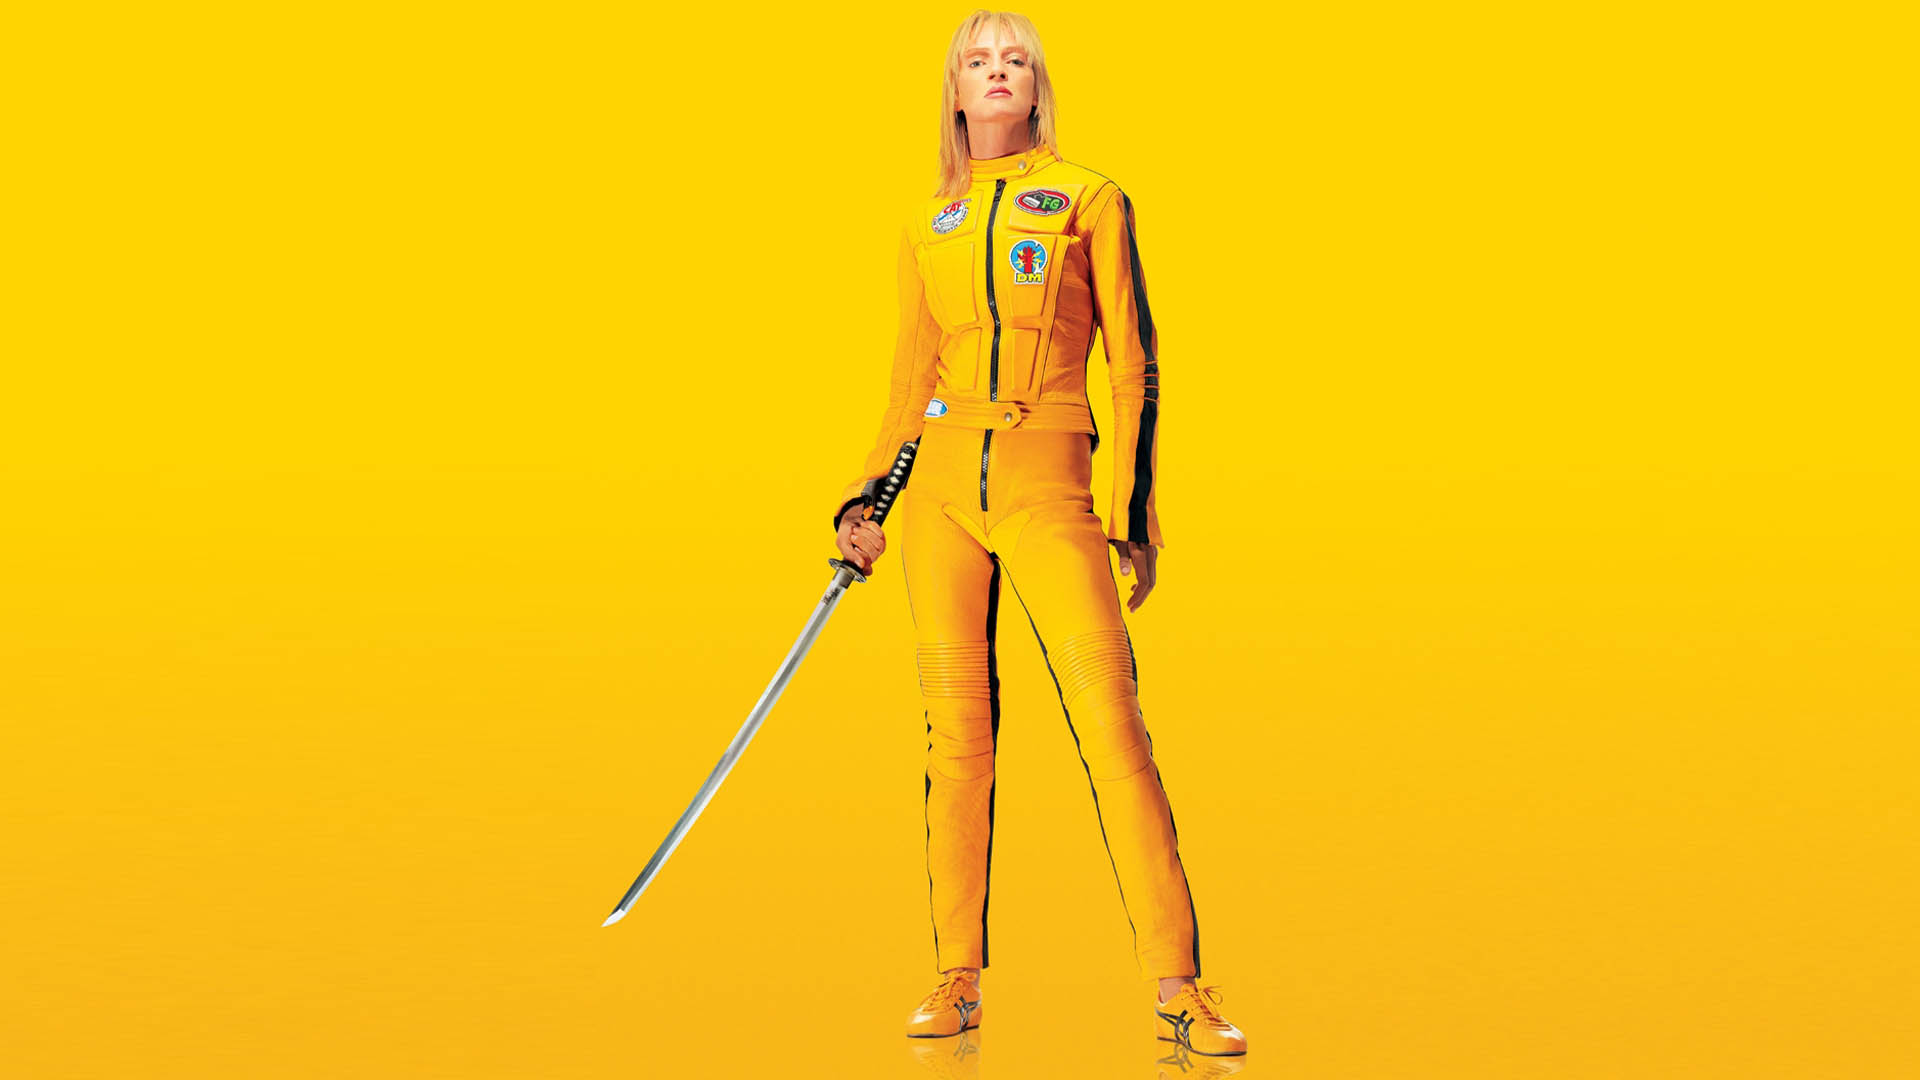 Kill Bill: Volume 1 Poster with Uma Thurman